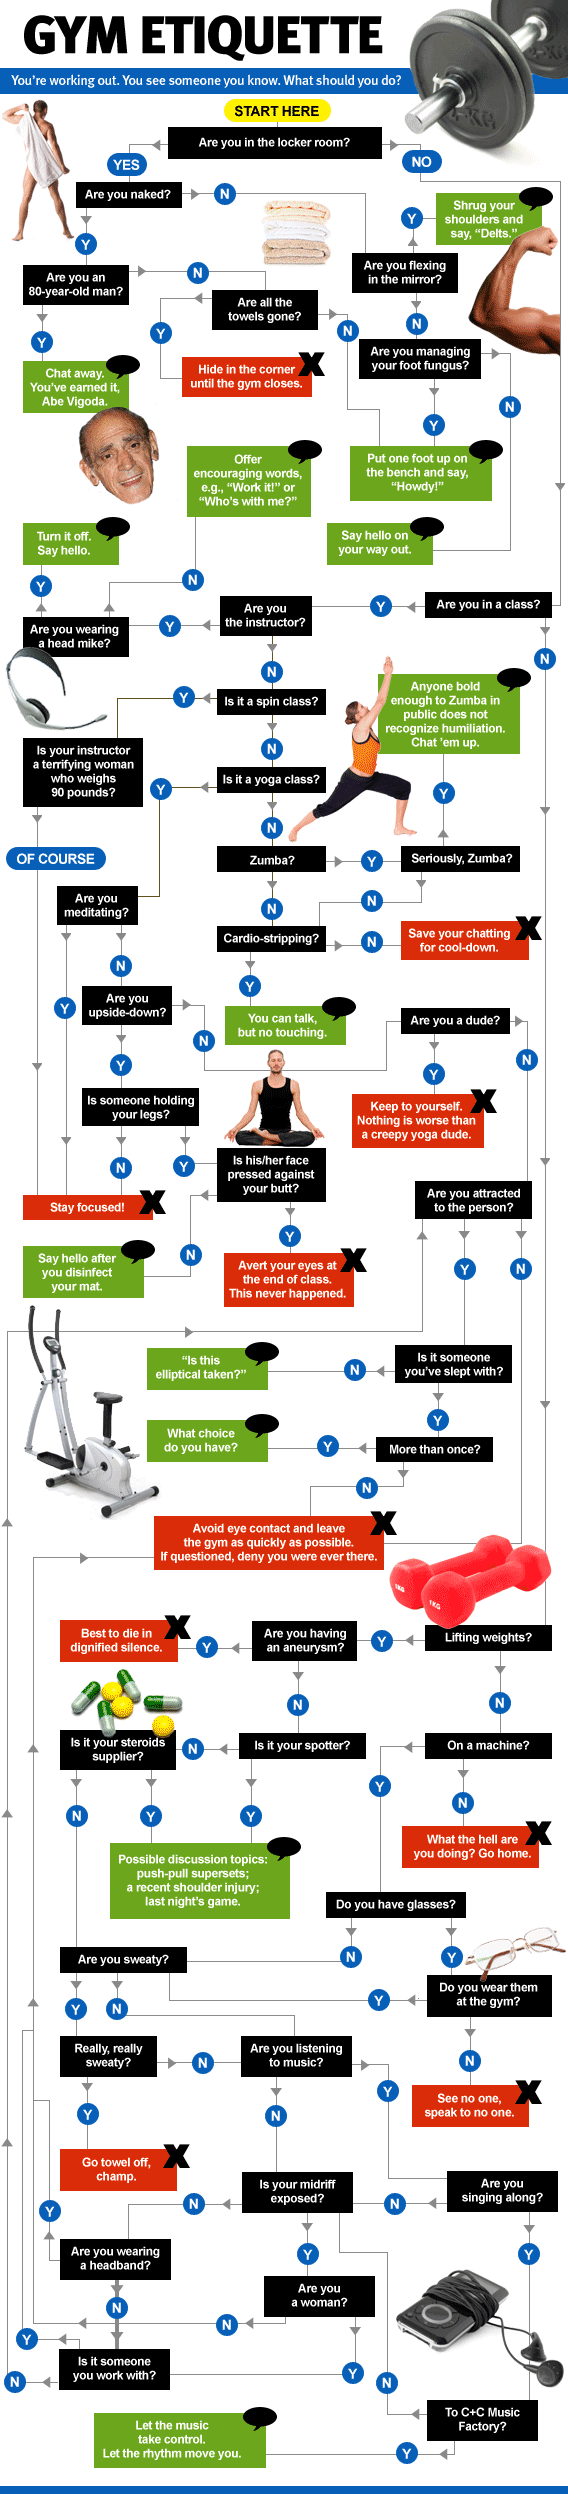 Gym Etiquette chart.